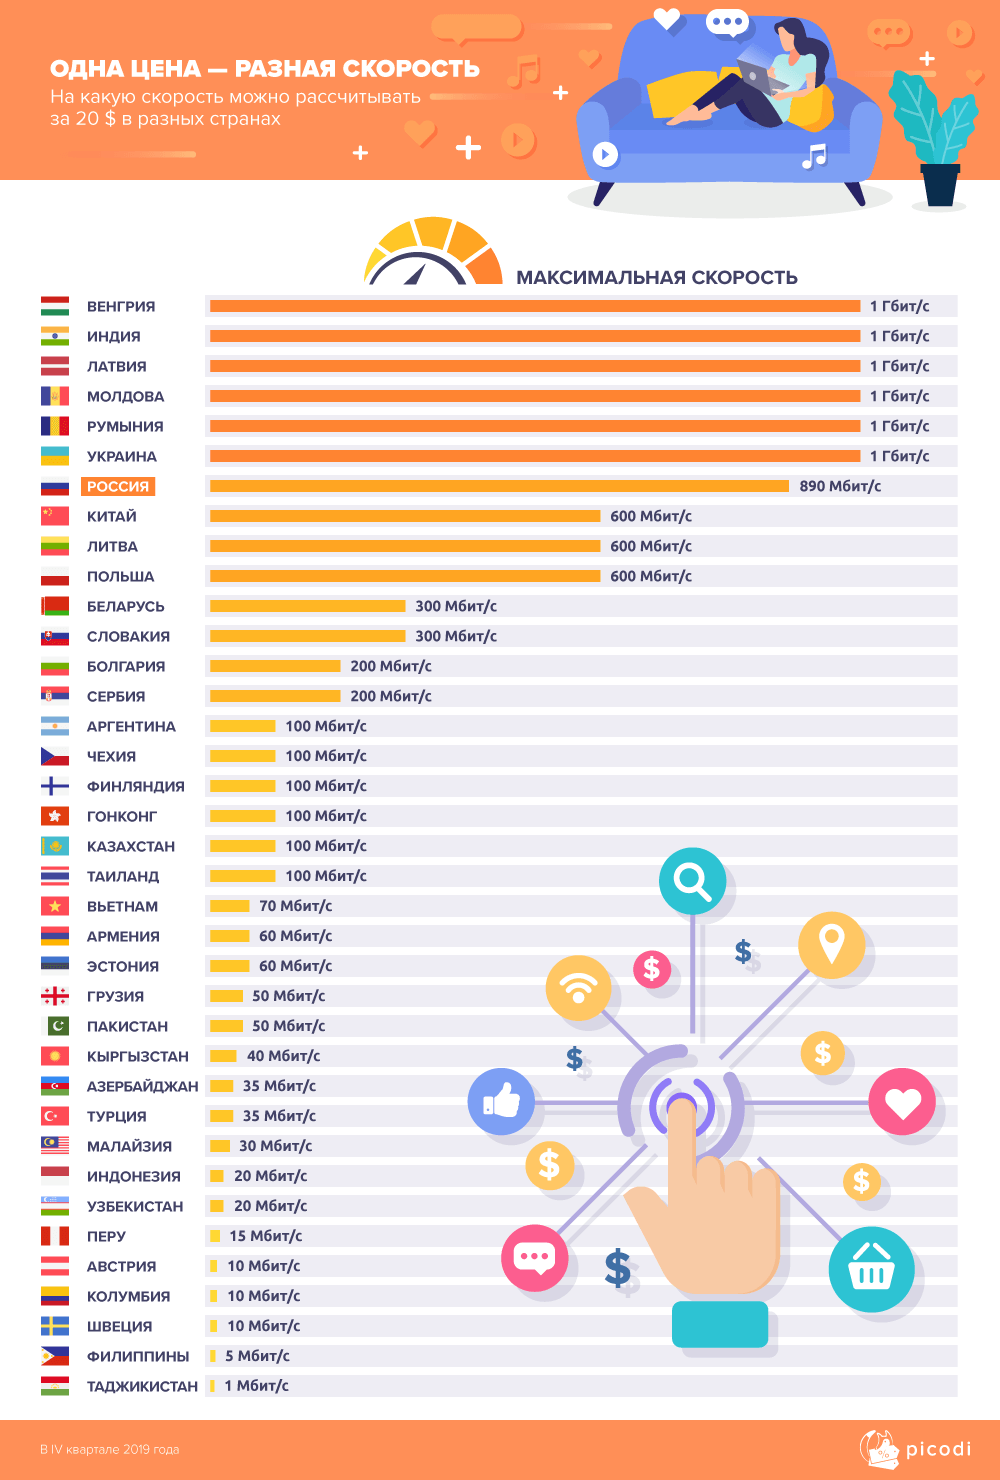 Аналитики компании Picodi сравнили цены на услуги проводного доступа в интернет 233 провайдеров из 62 стран мира - 3